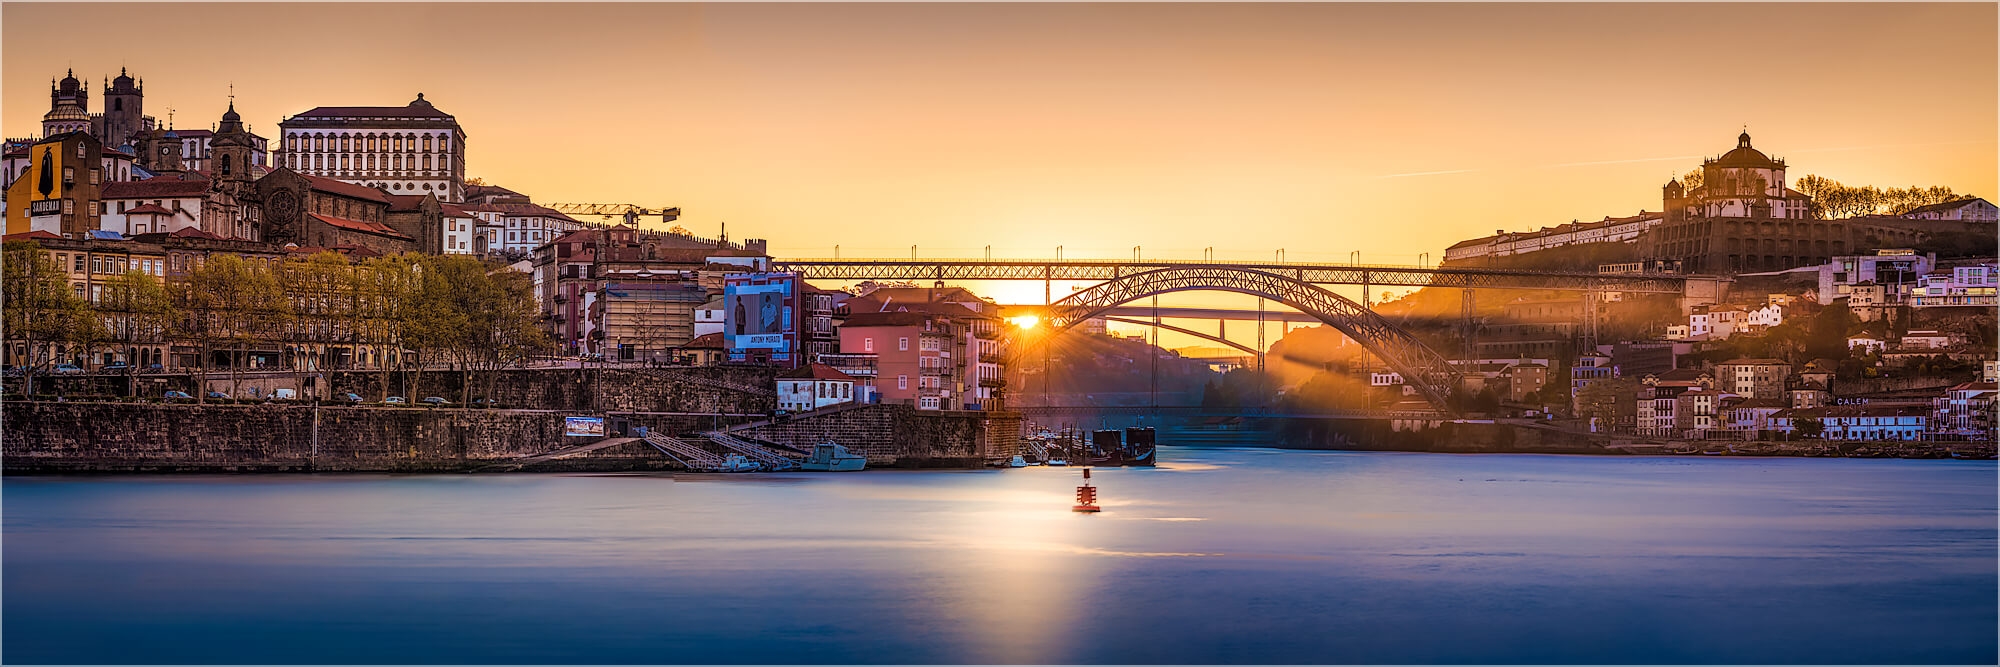 Panoramafoto Porto Portugal morgens am Douro Fluss